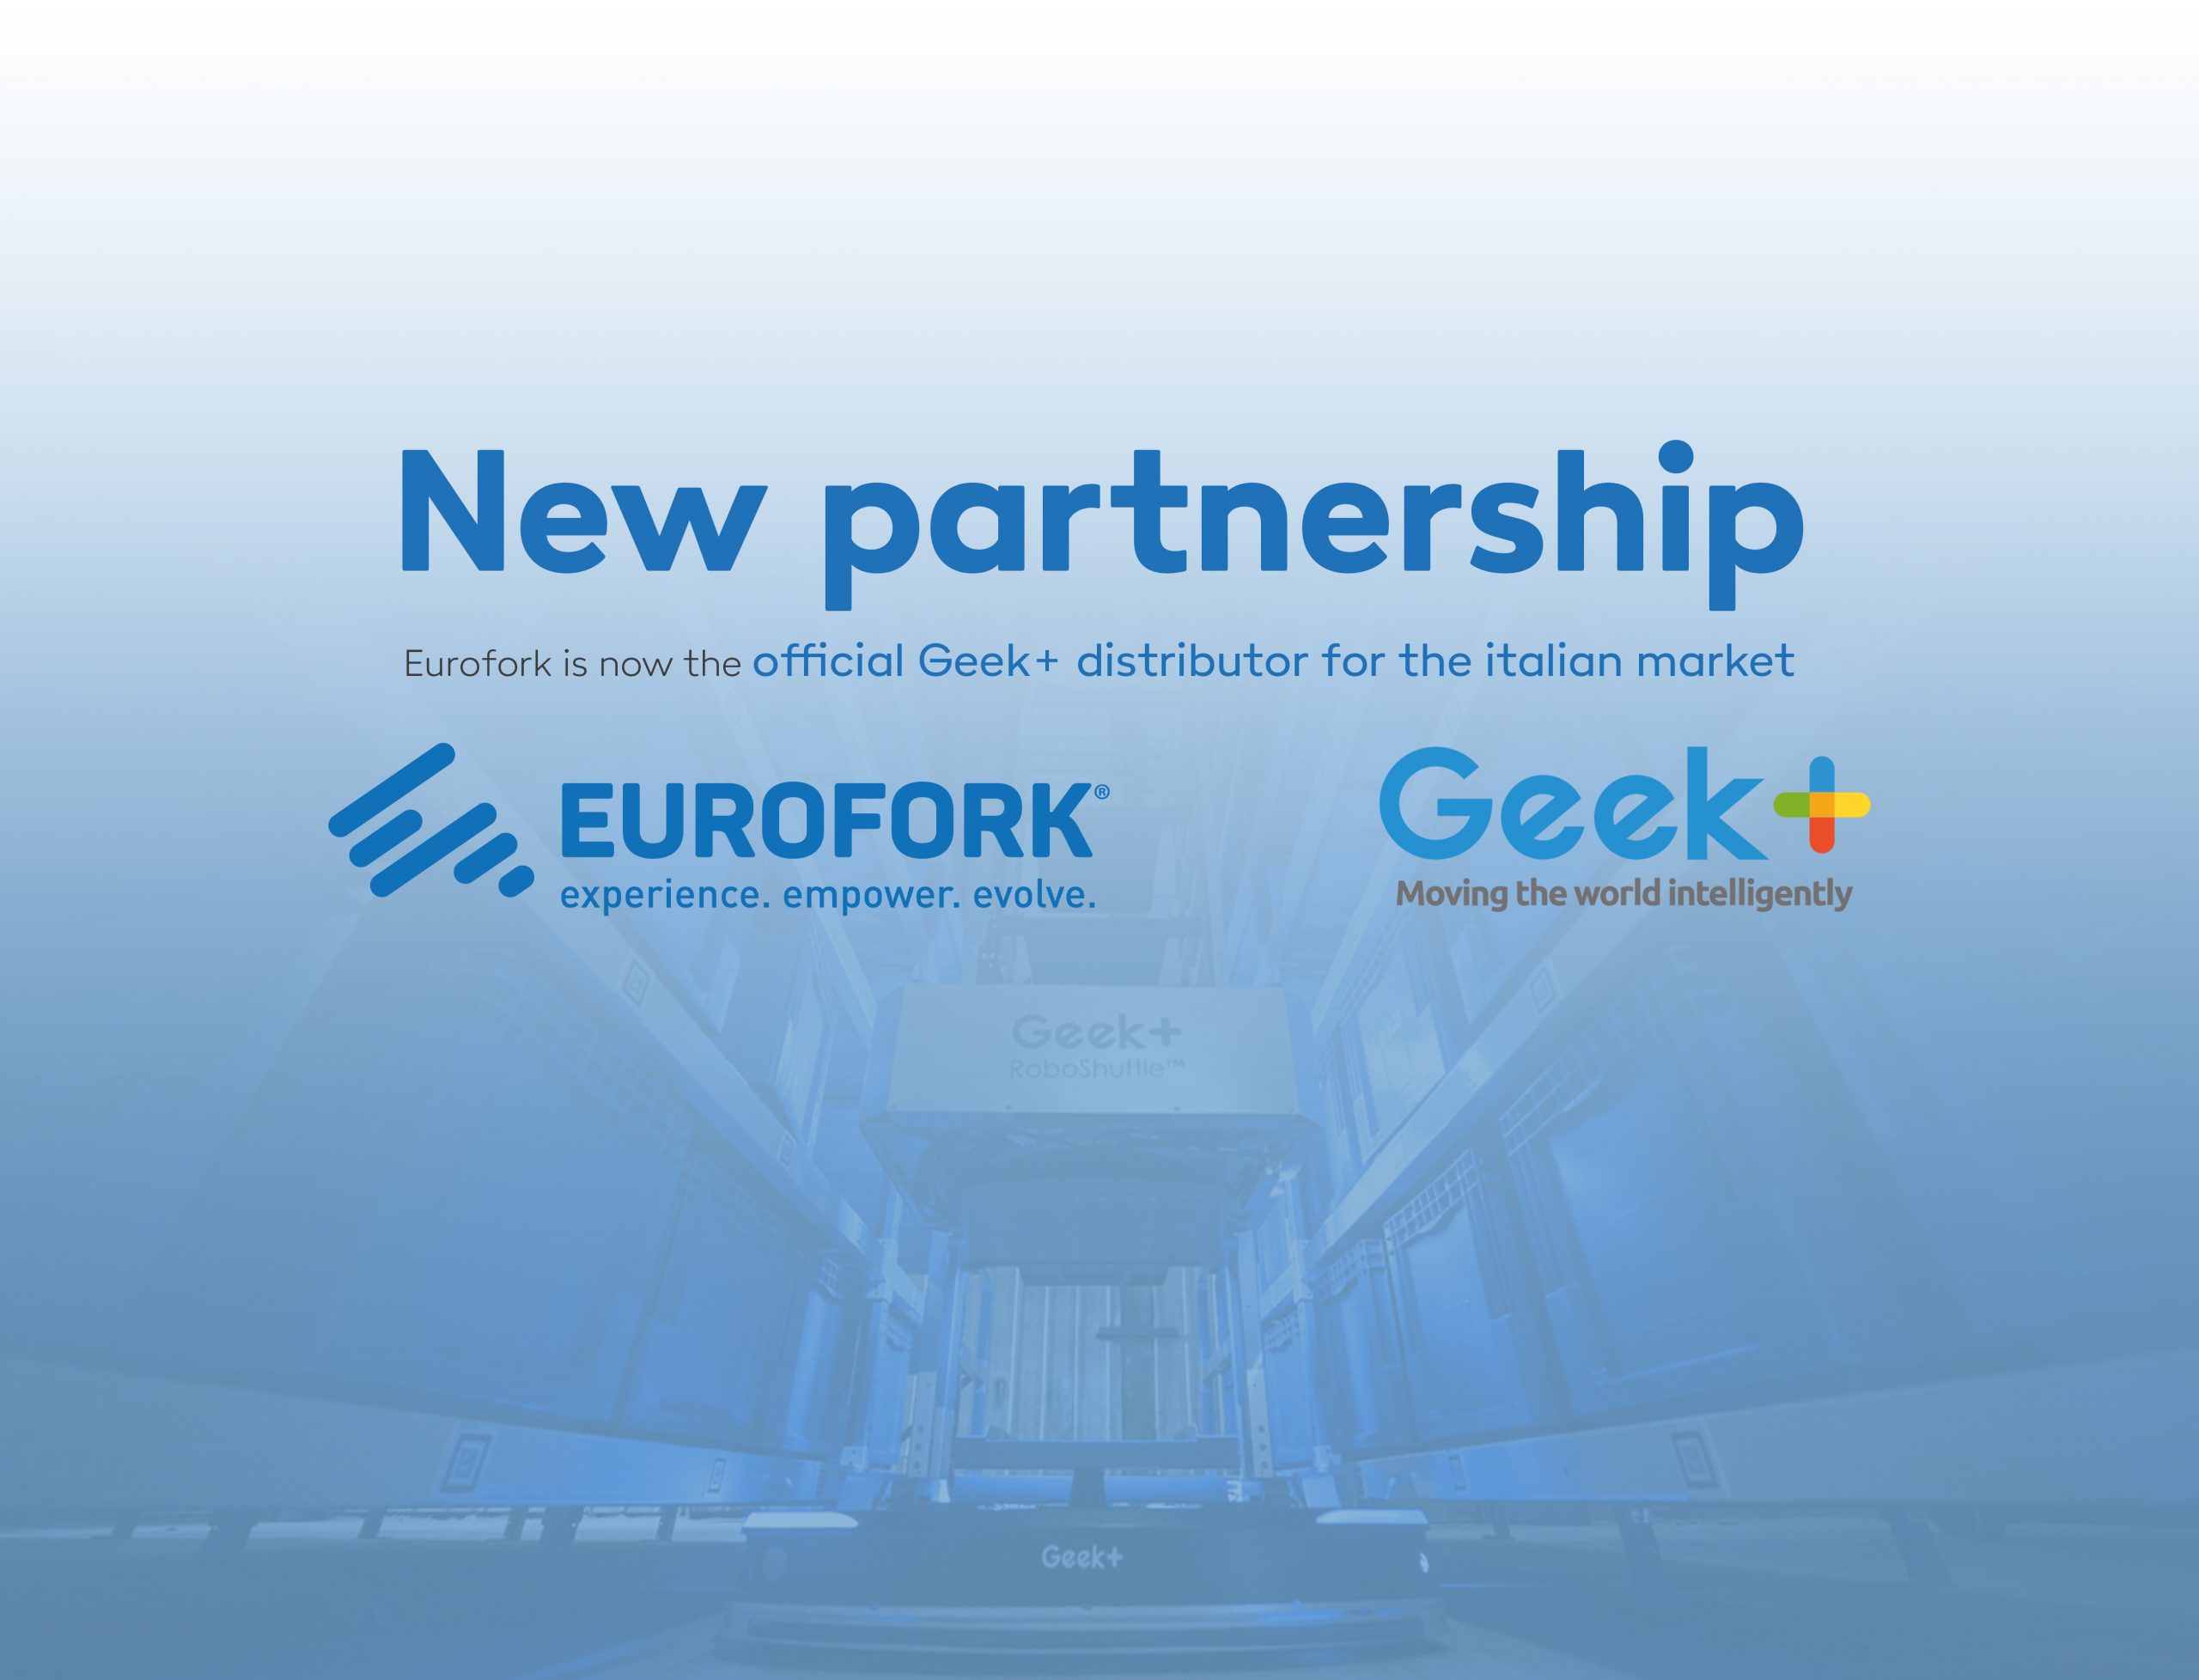 Partnership_Eurofork_Geek-4-scaled